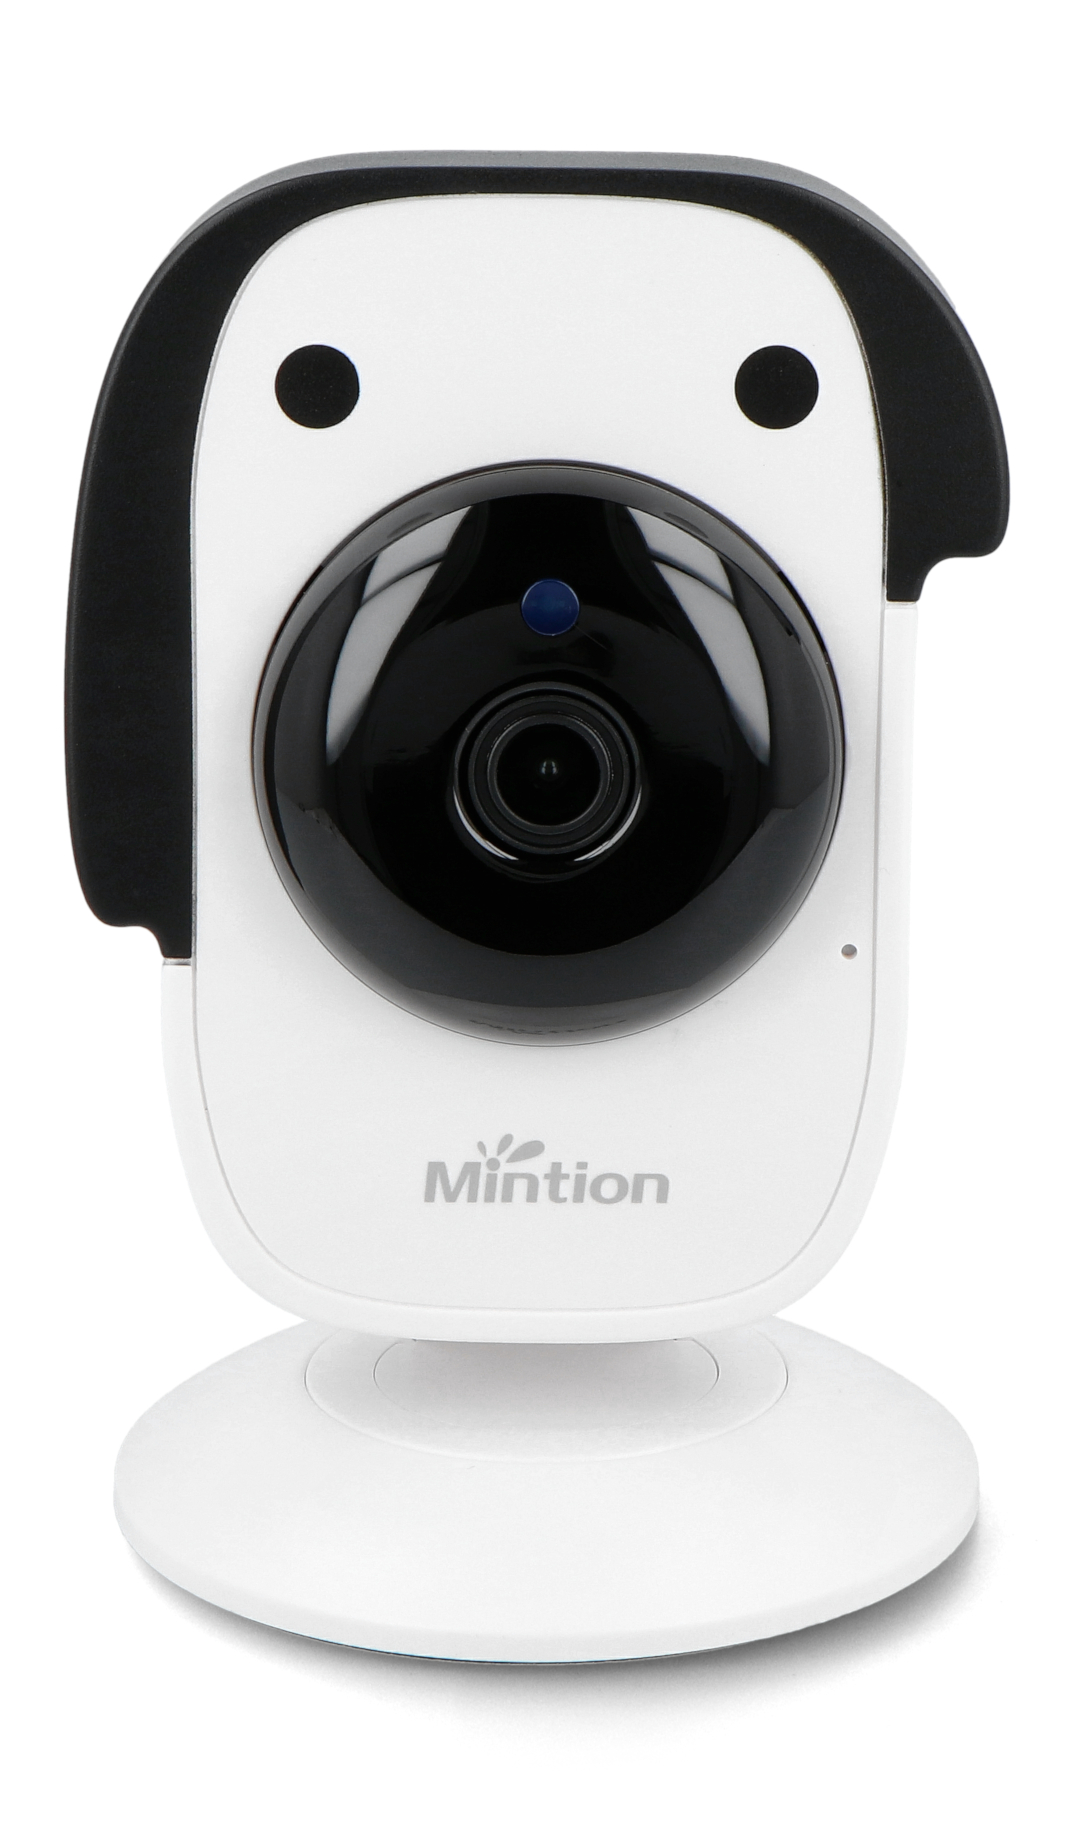 Mintion Beagle - eine Kamera zur Fernüberwachung und -steuerung eines  3D-Druckers Botland - Robotikgeschäft